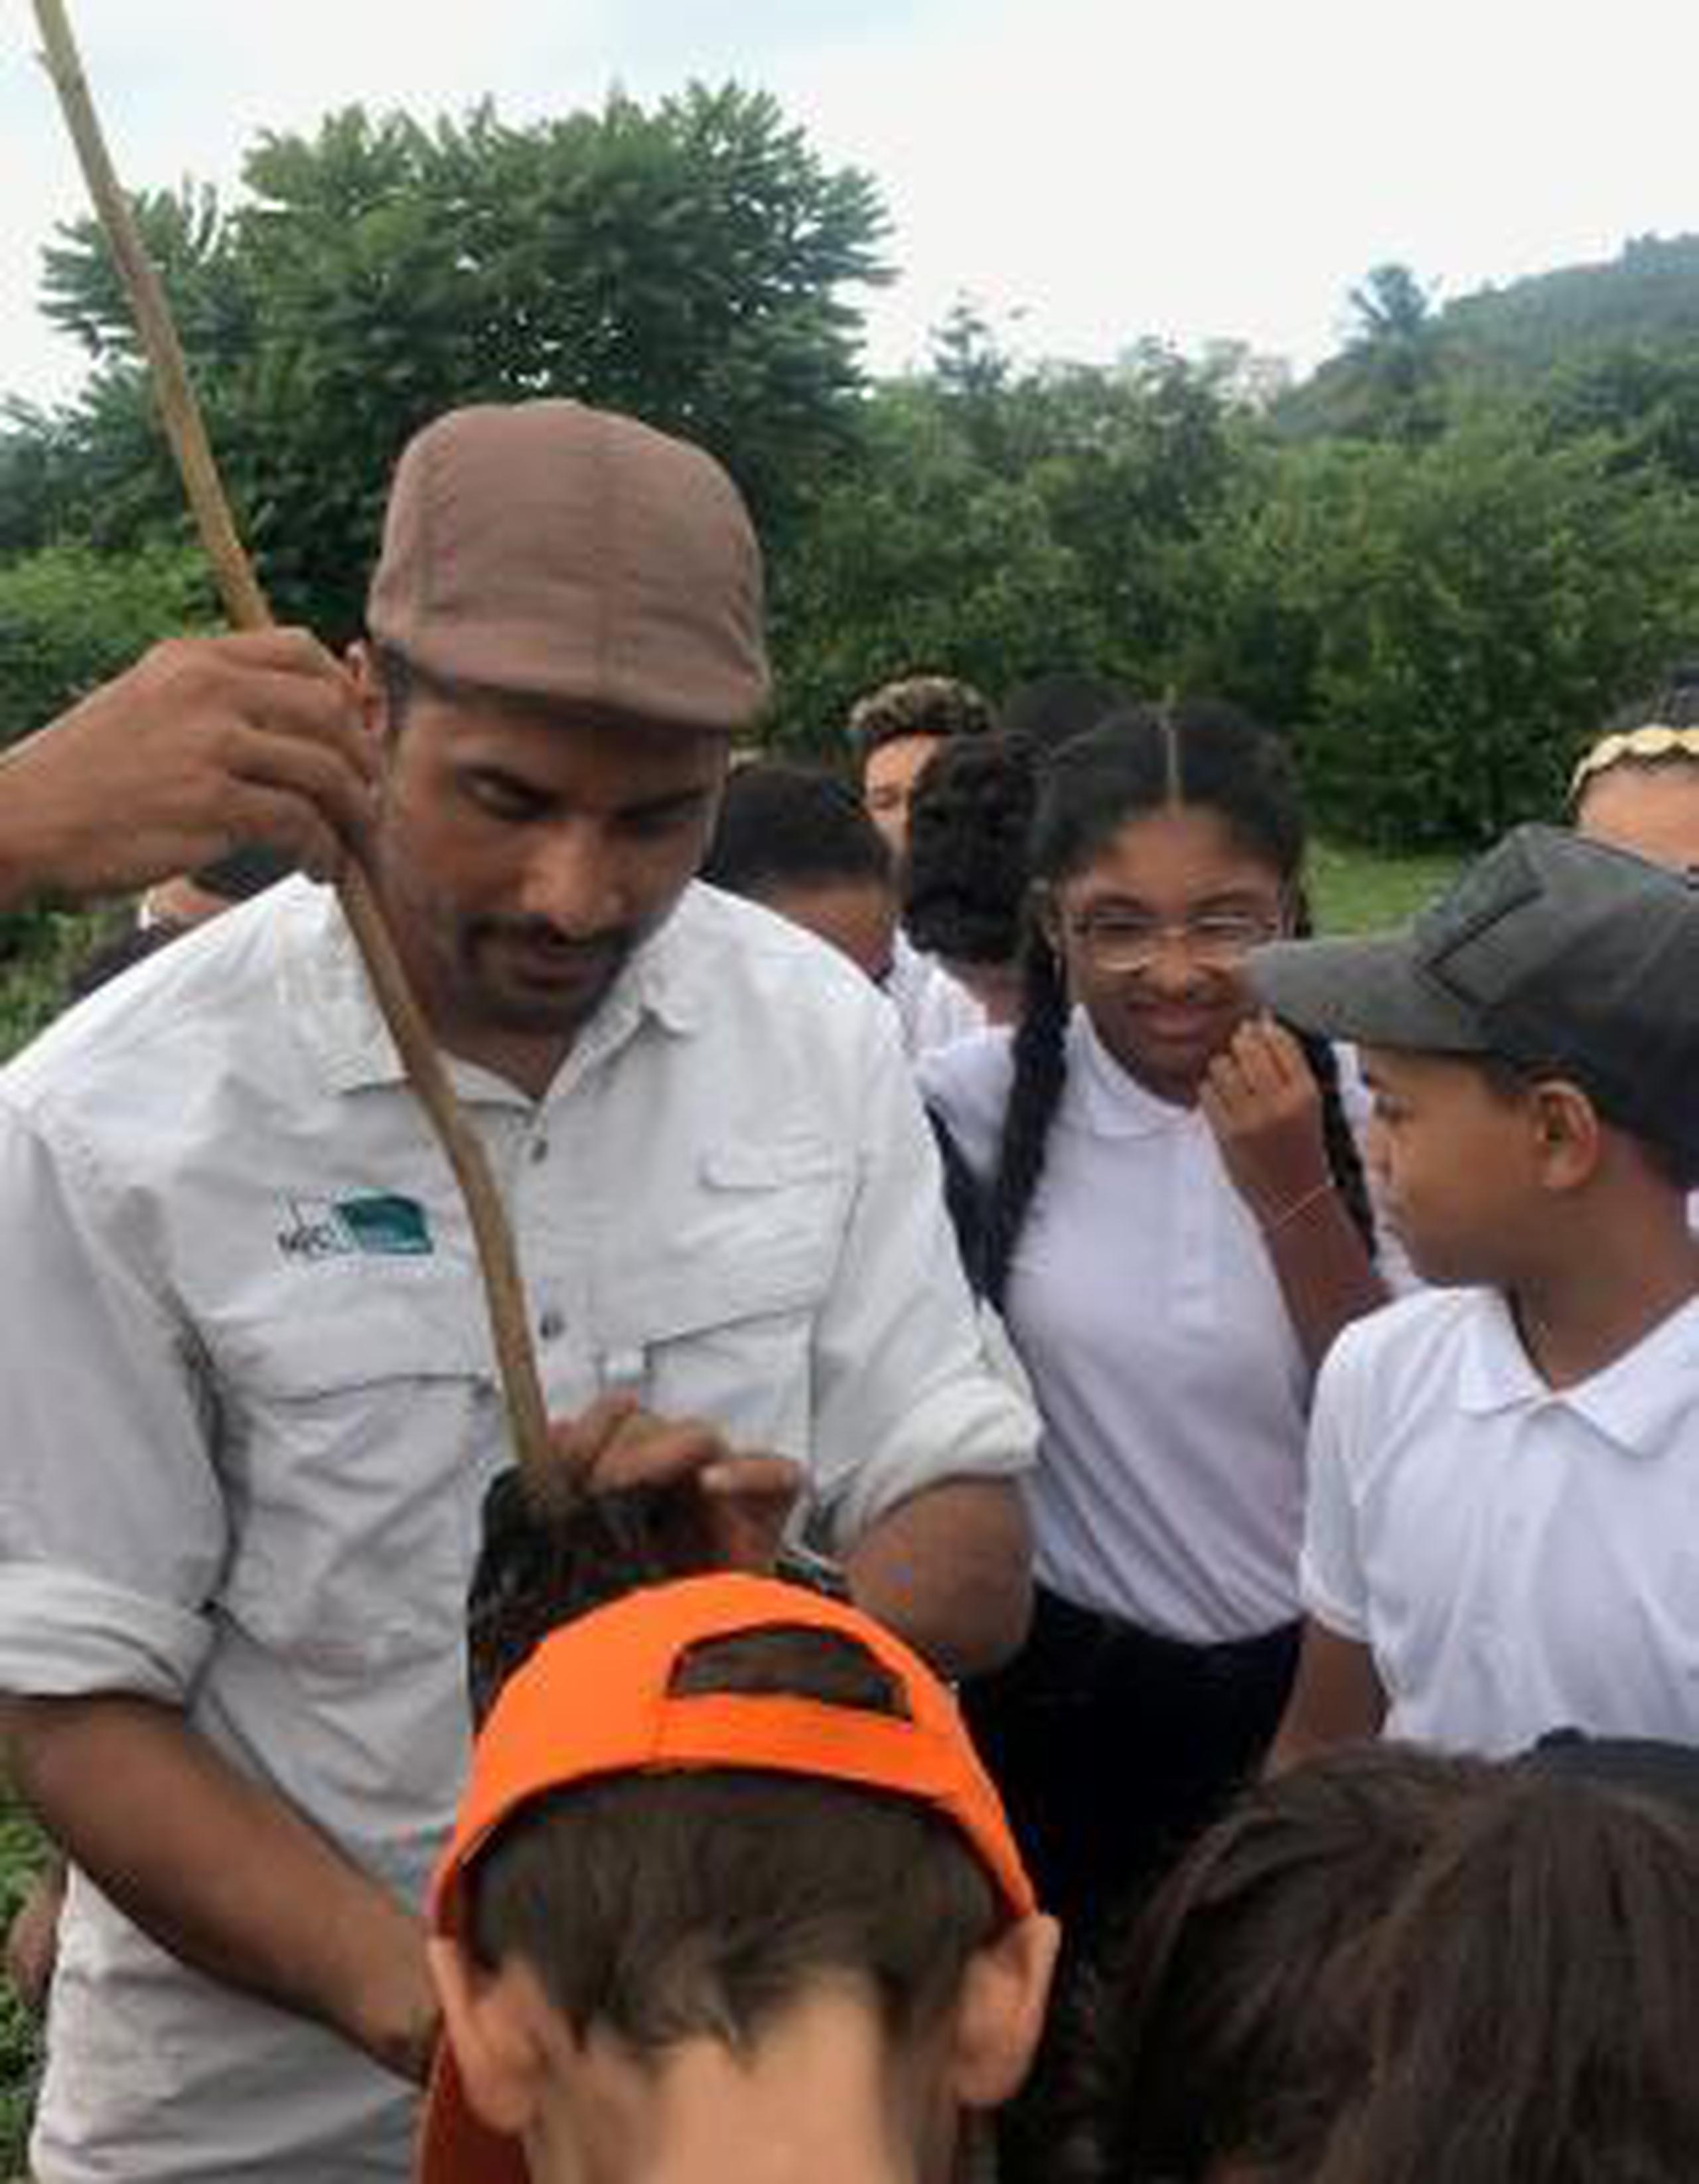 Participaron alumnos de la Escuela Ecológica de Caguas y la Escuela de la Comunidad de Maunabo Josefina Muñoz de Bernier, que conocieron sobre las especies mangle botón, cayur, roble y péndula. (Suministrada)